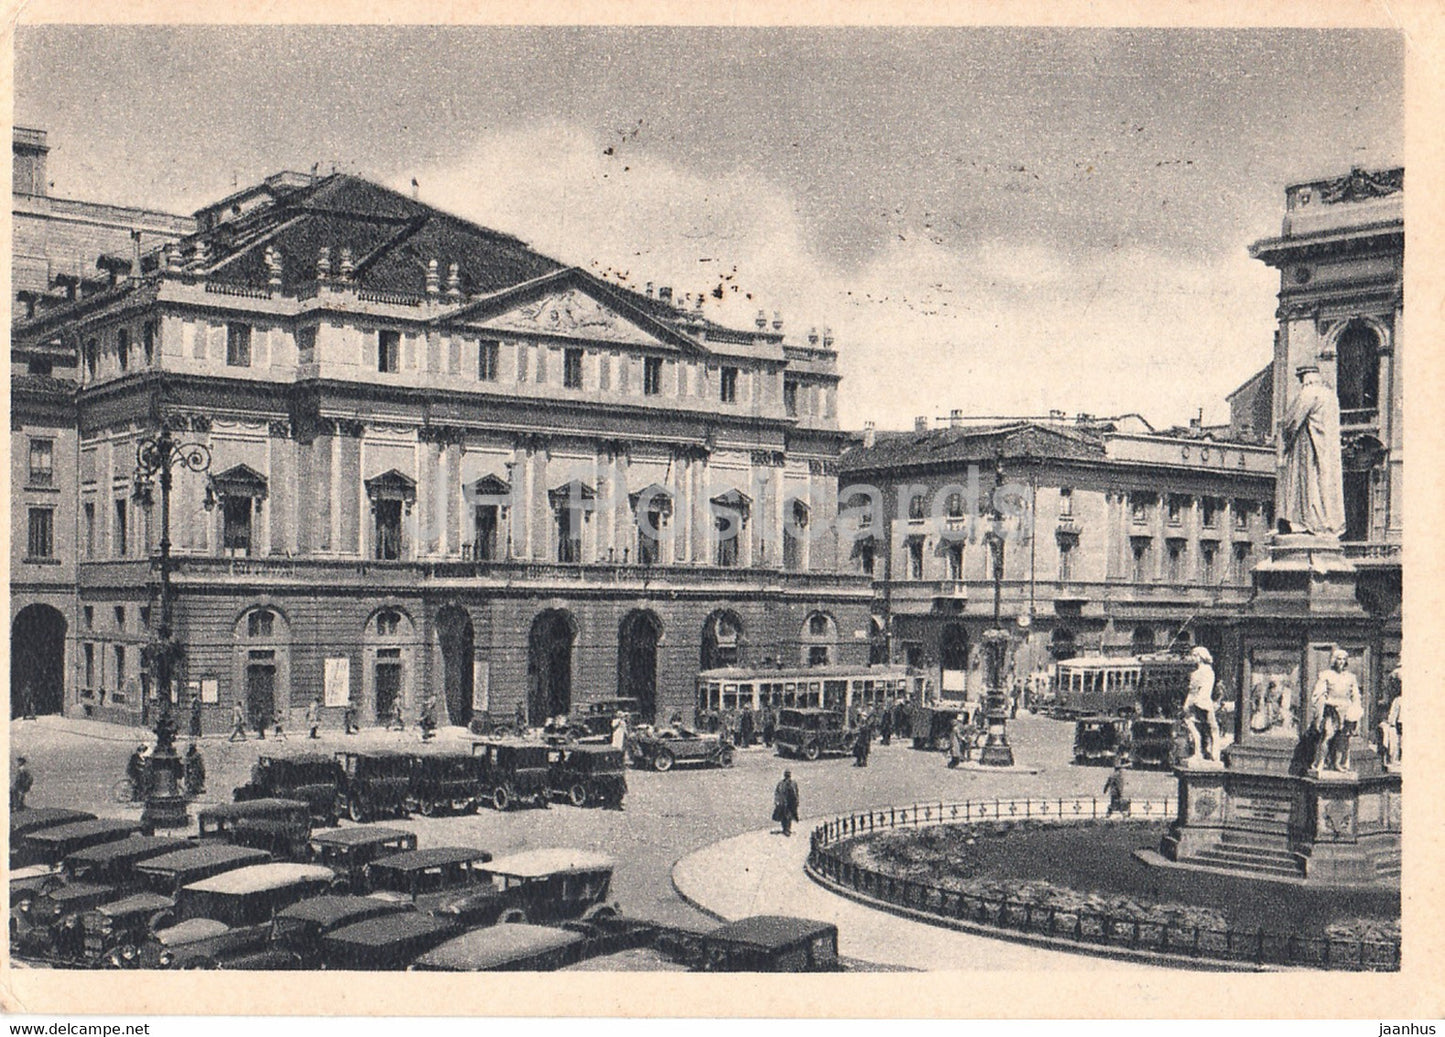 Milano - Milan - Piazza del Teatro alla Scala e Mon a Leonardo da Vinci - tram - car 1949 - old postcard - Italy - used - JH Postcards